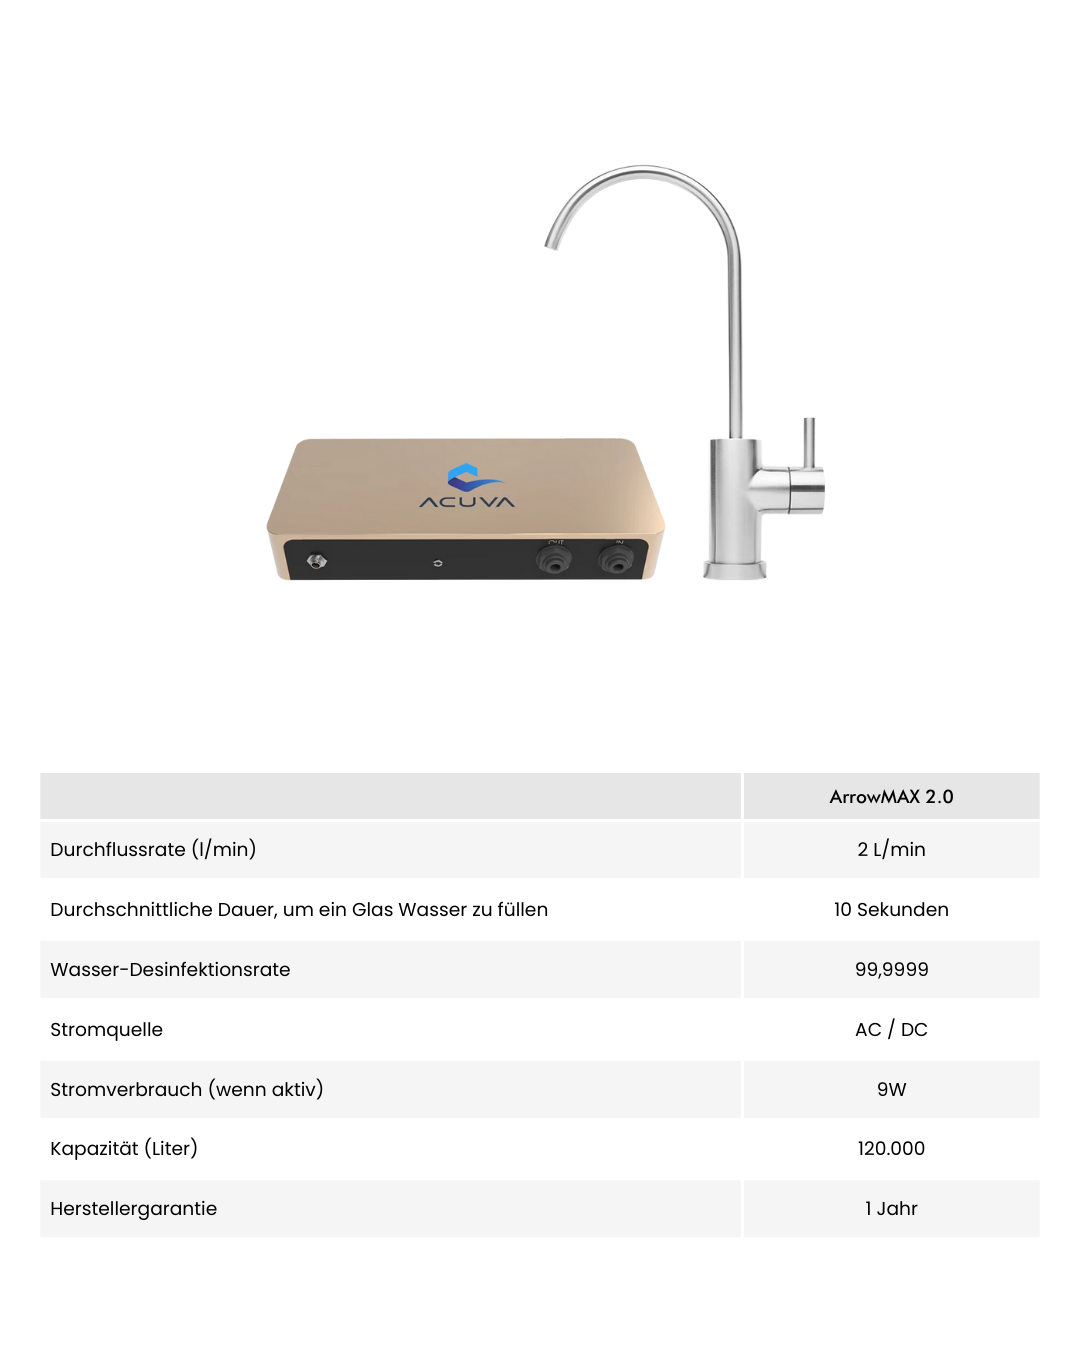 Acuva ArrowMAX 2.0 UV-LED Wasserreiniger Details